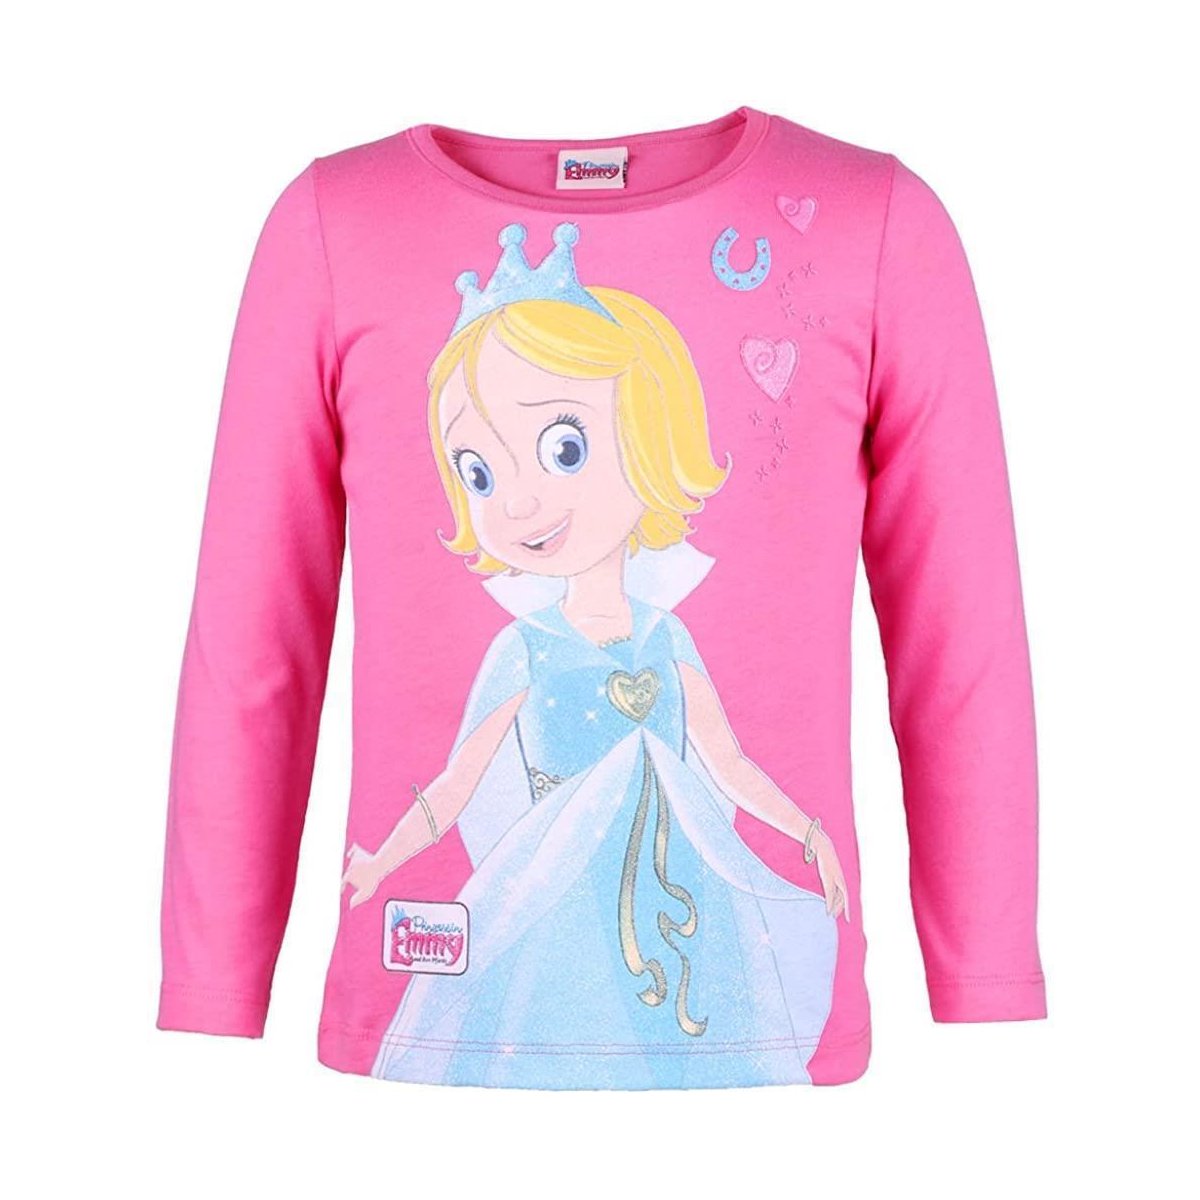 Prinzessin Langarmshirt pink Shirt Glitzer, Emmy mit